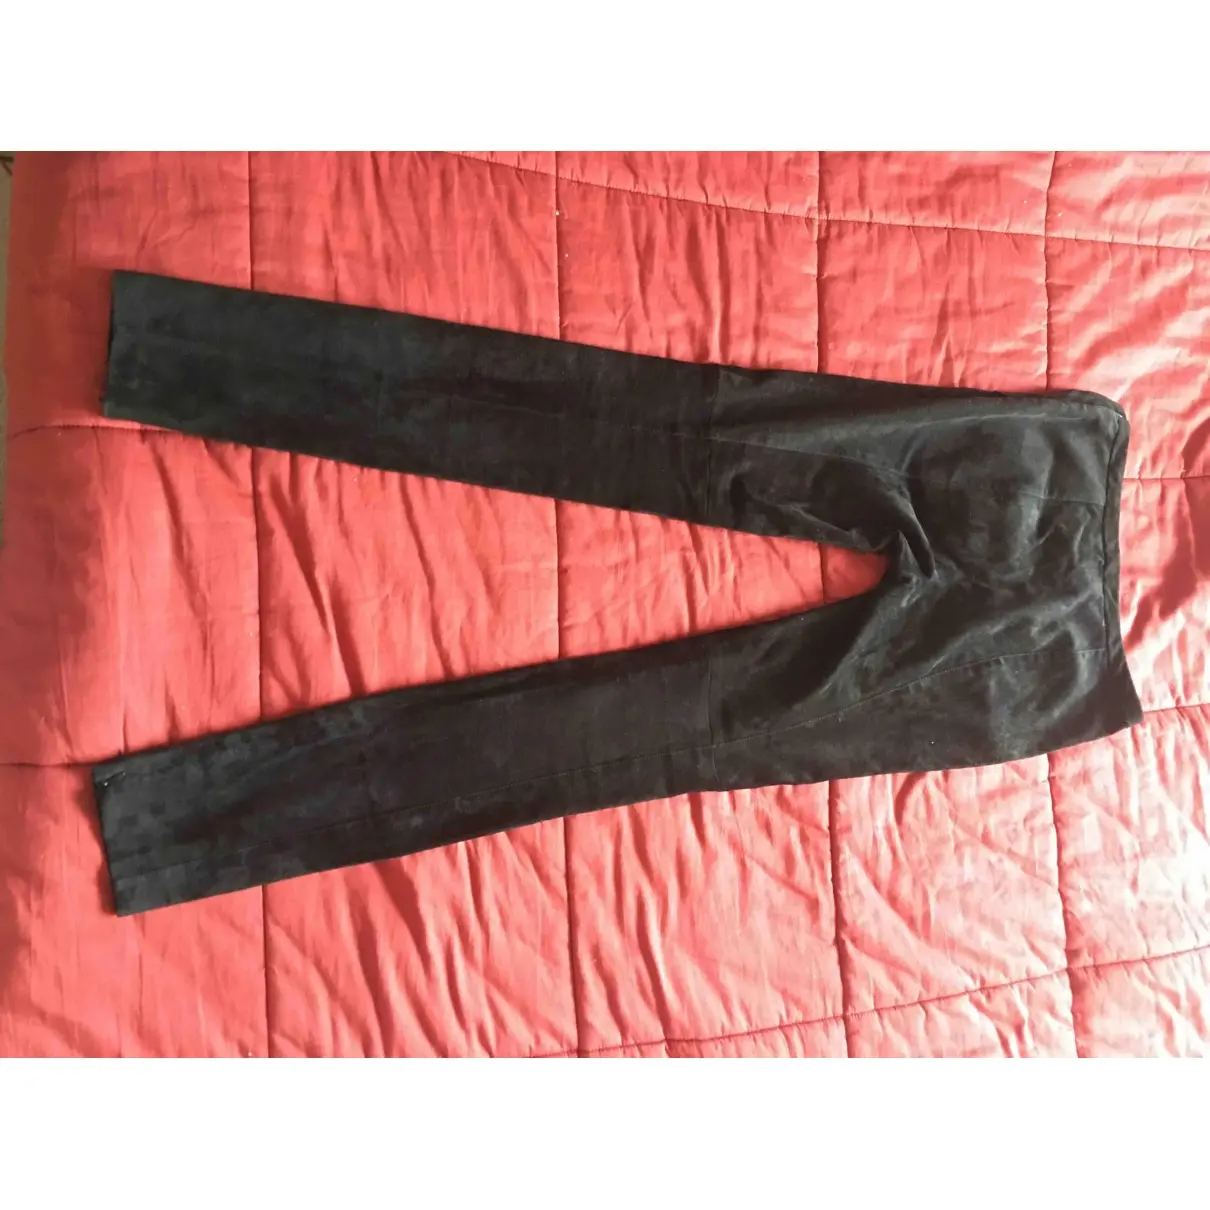 Proenza Schouler Slim pants for sale